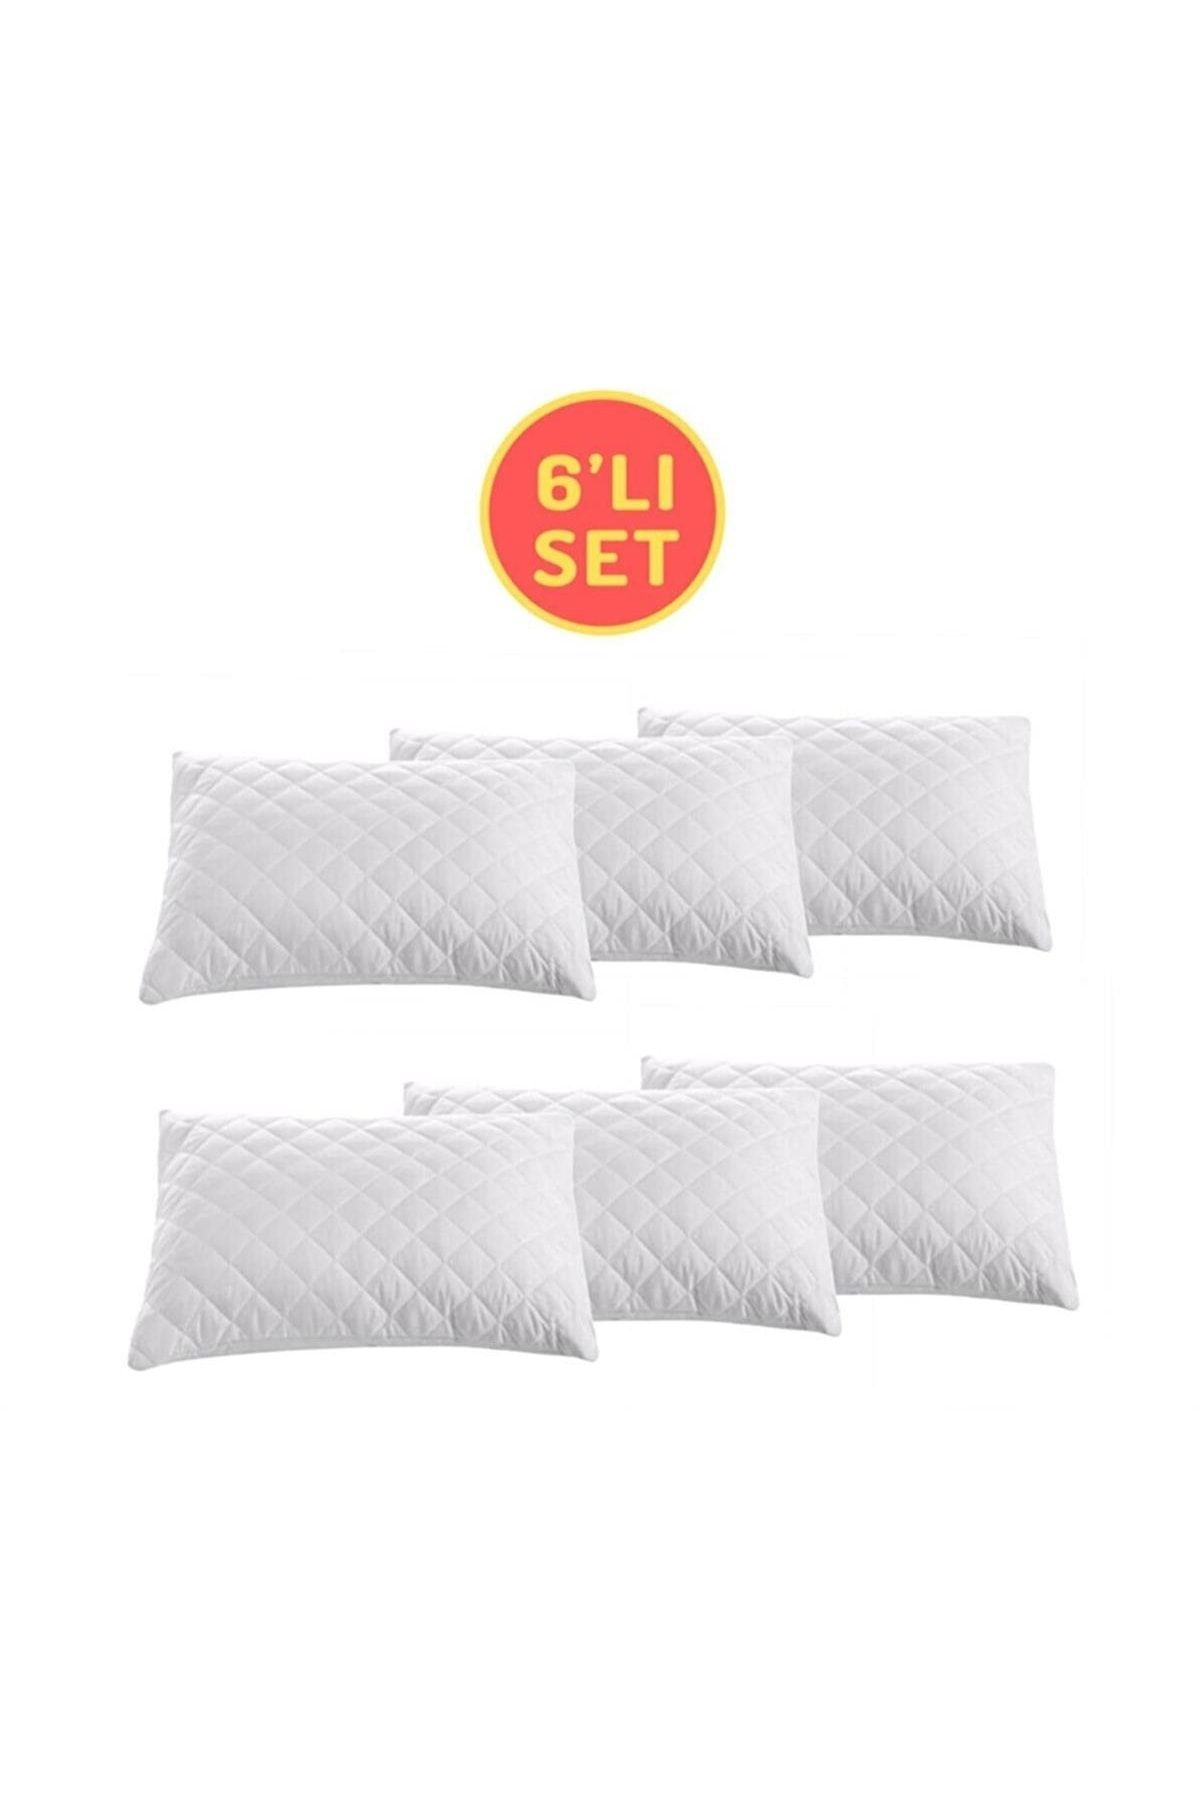 Sheri Home Tekstil Sheri 6'lı Set Yastık Koruyucu, Eco Pamuklu Yastık Alezi, 50 X 70 Cm Scttn8817788